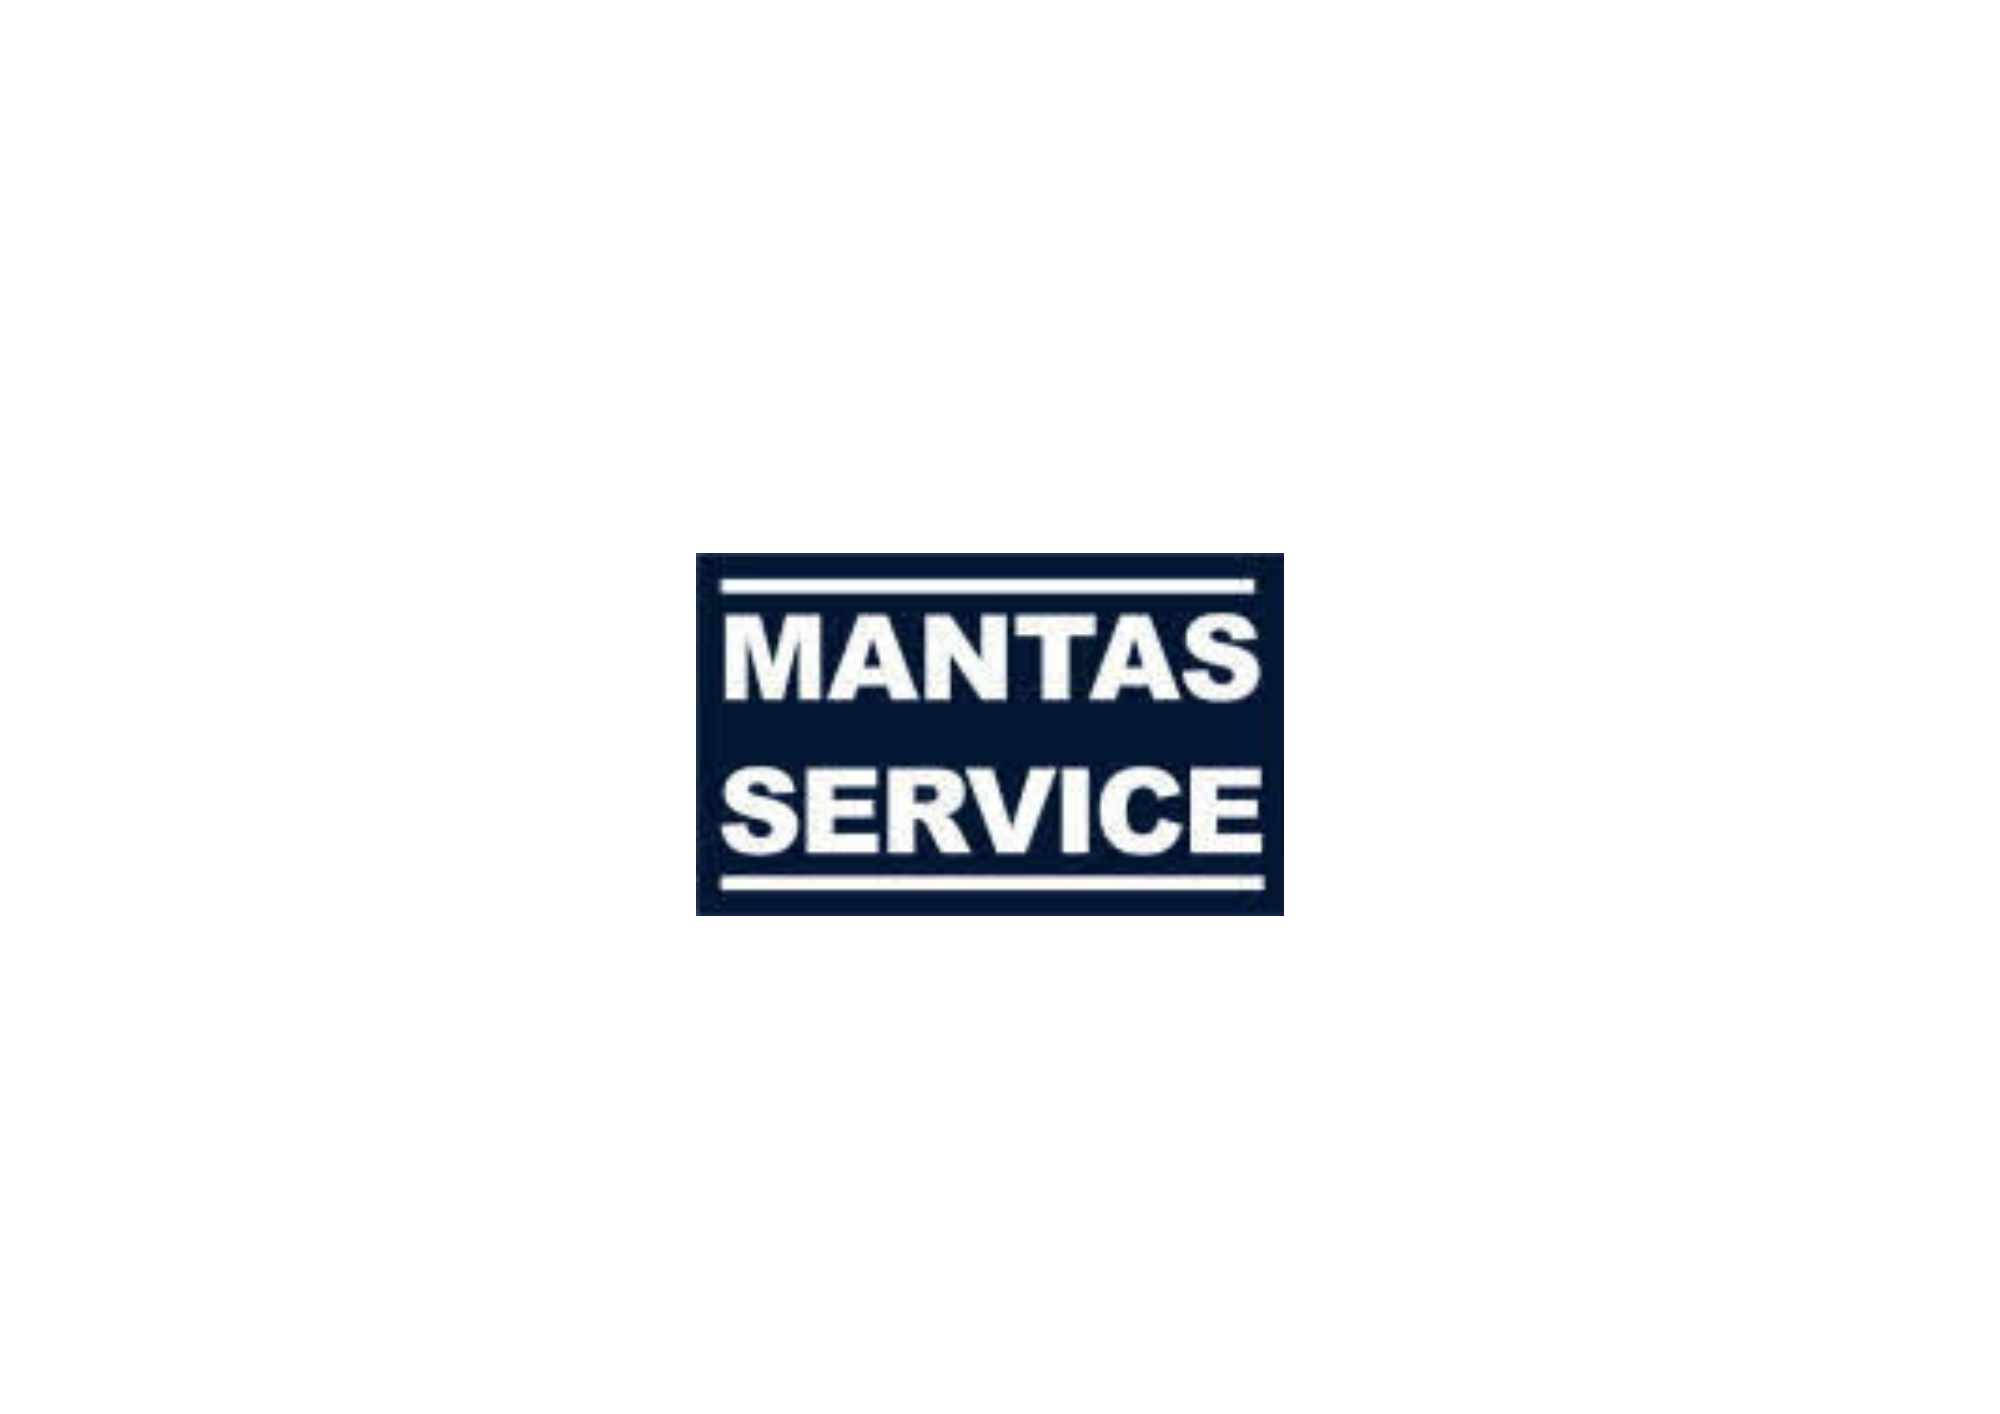 MANTAS SERVICE